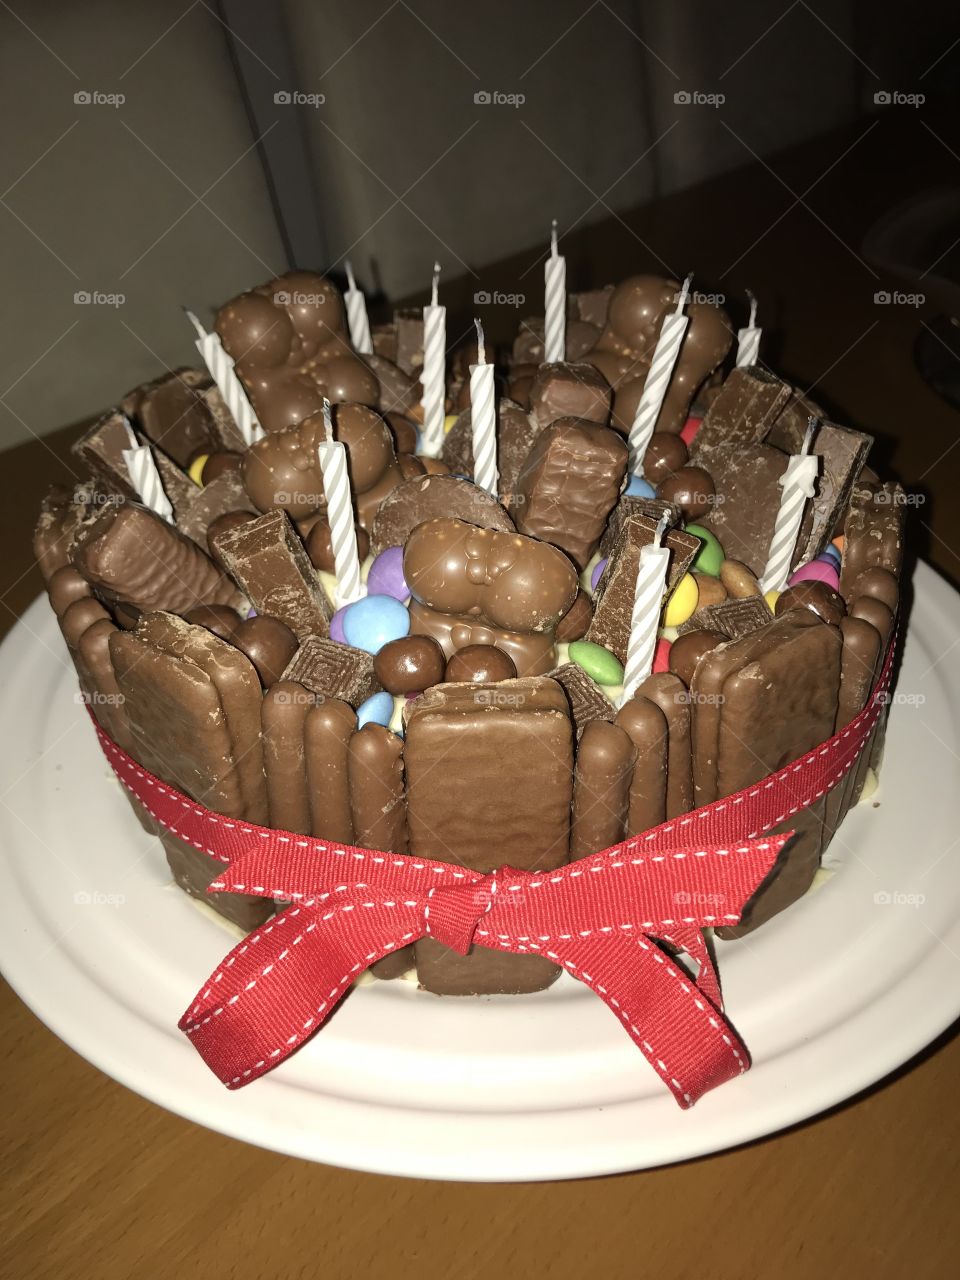 Homemade birthday cake